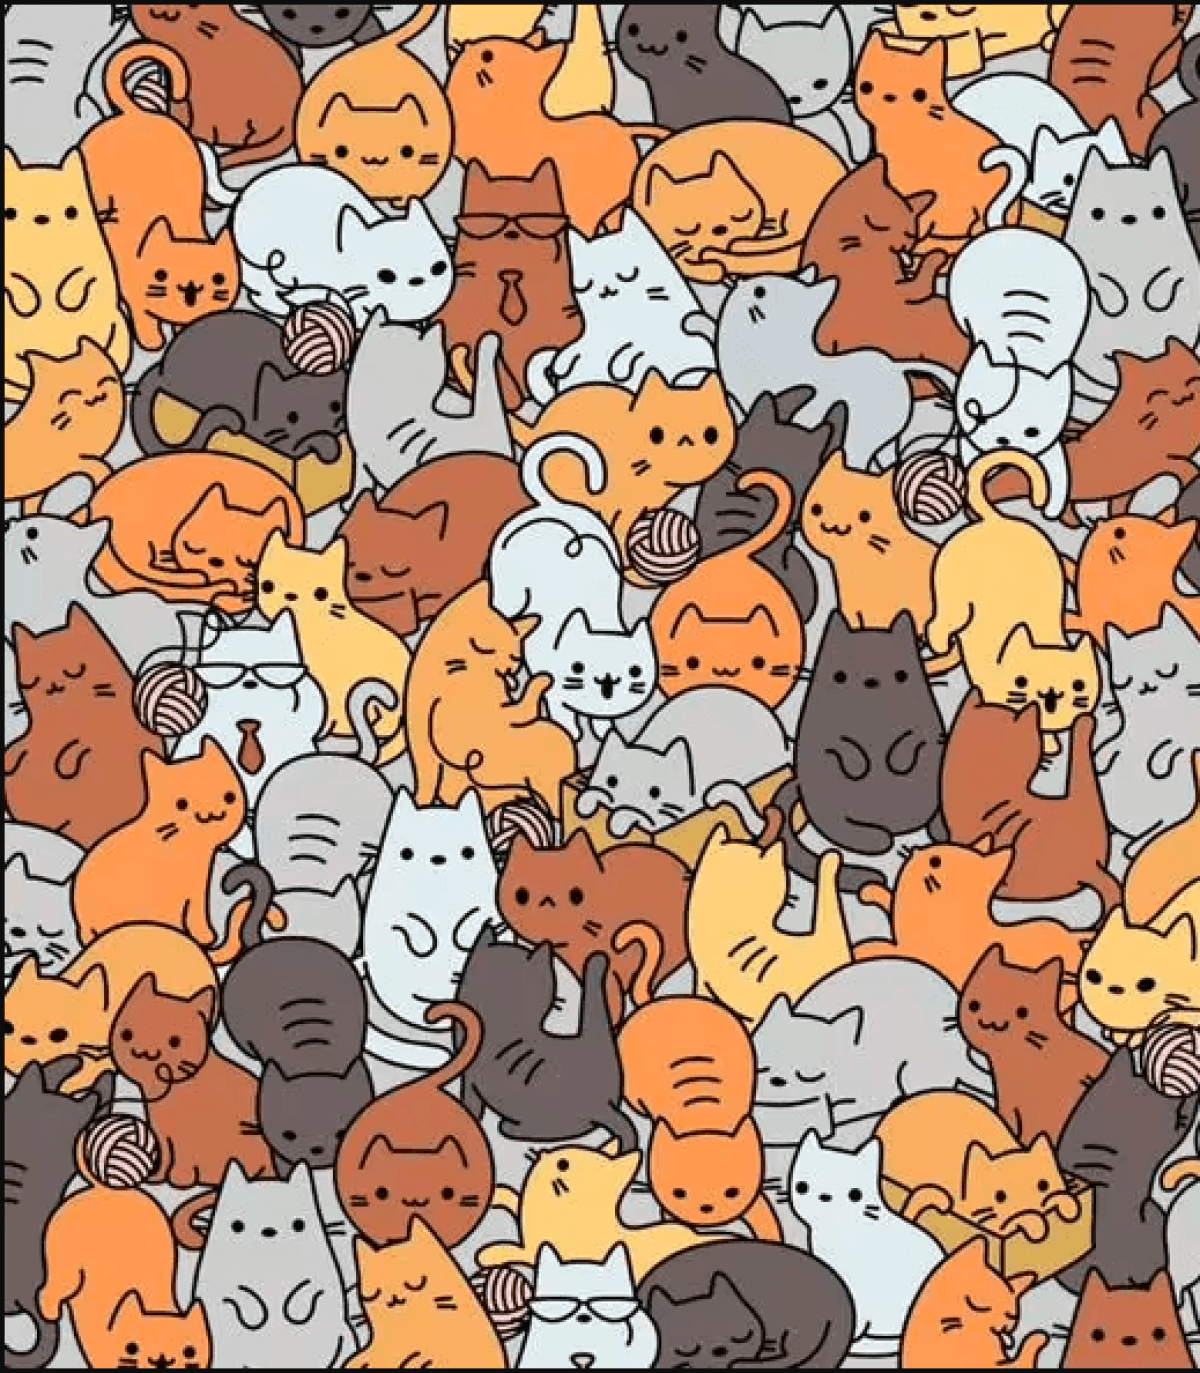 Кошачья головоломка - найдите мышку среди кошек за 6 секунд — УНИАН